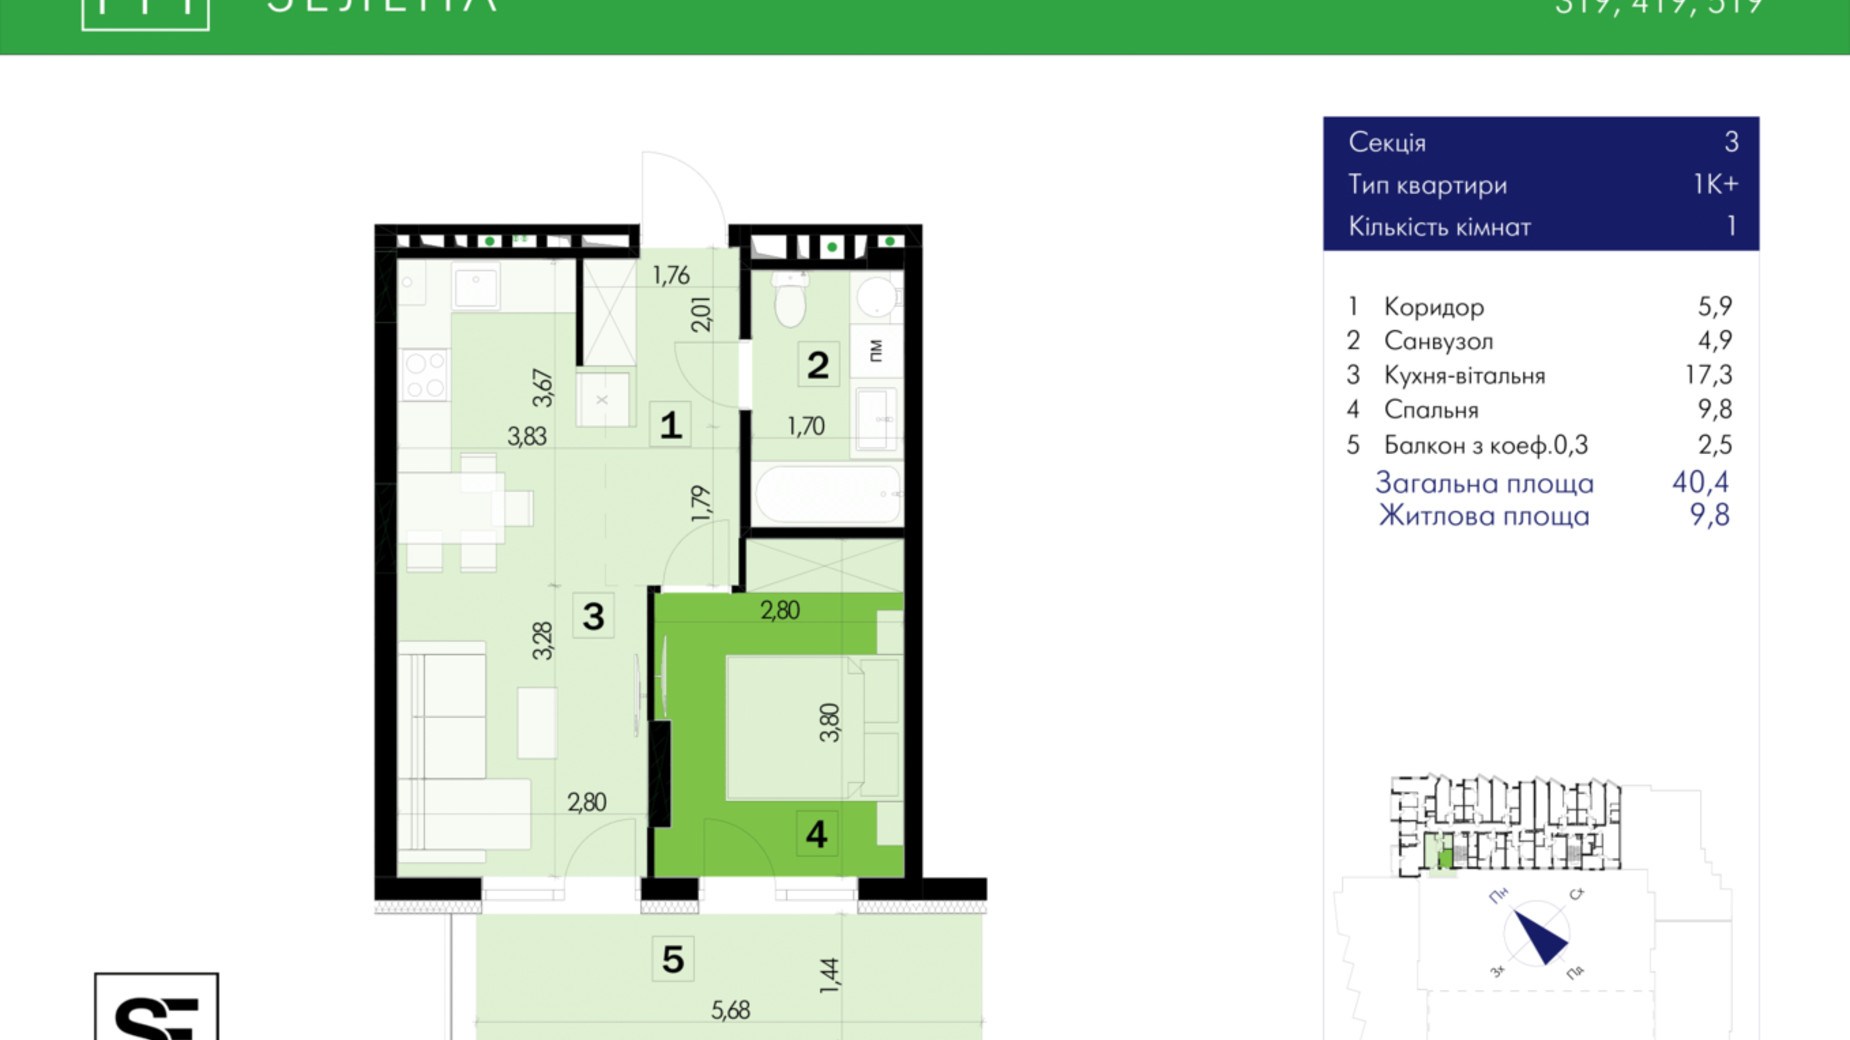 Планировка 1-комнатной квартиры в ЖК 111 Zelena 40.4 м², фото 634027